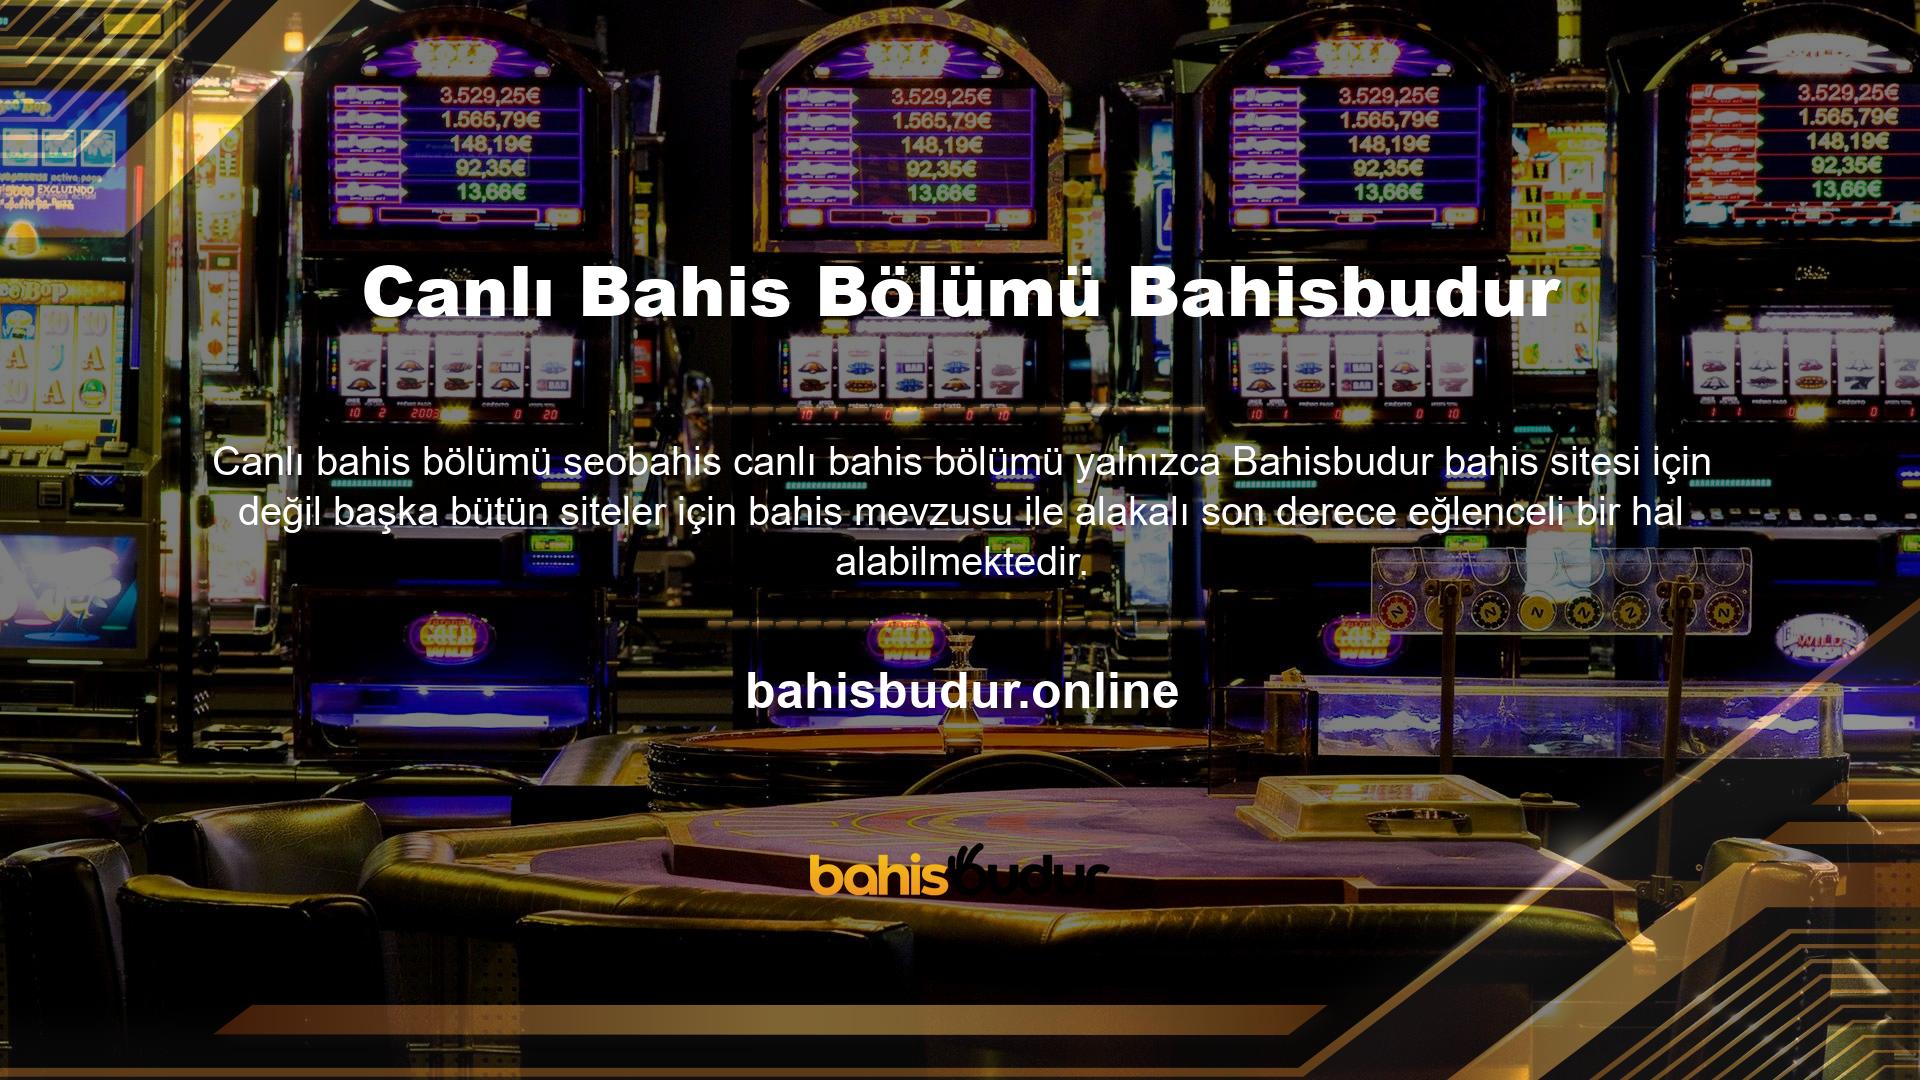 Bahisbudur canlı bahis, bahis mevzusu ile alakalı müşterilerine en iyi bahis olanağını yayınlayan ve bahis severleri en iyi şekilde ağırlamayı başaran bahis siteleri arasında yer alabilmektedir